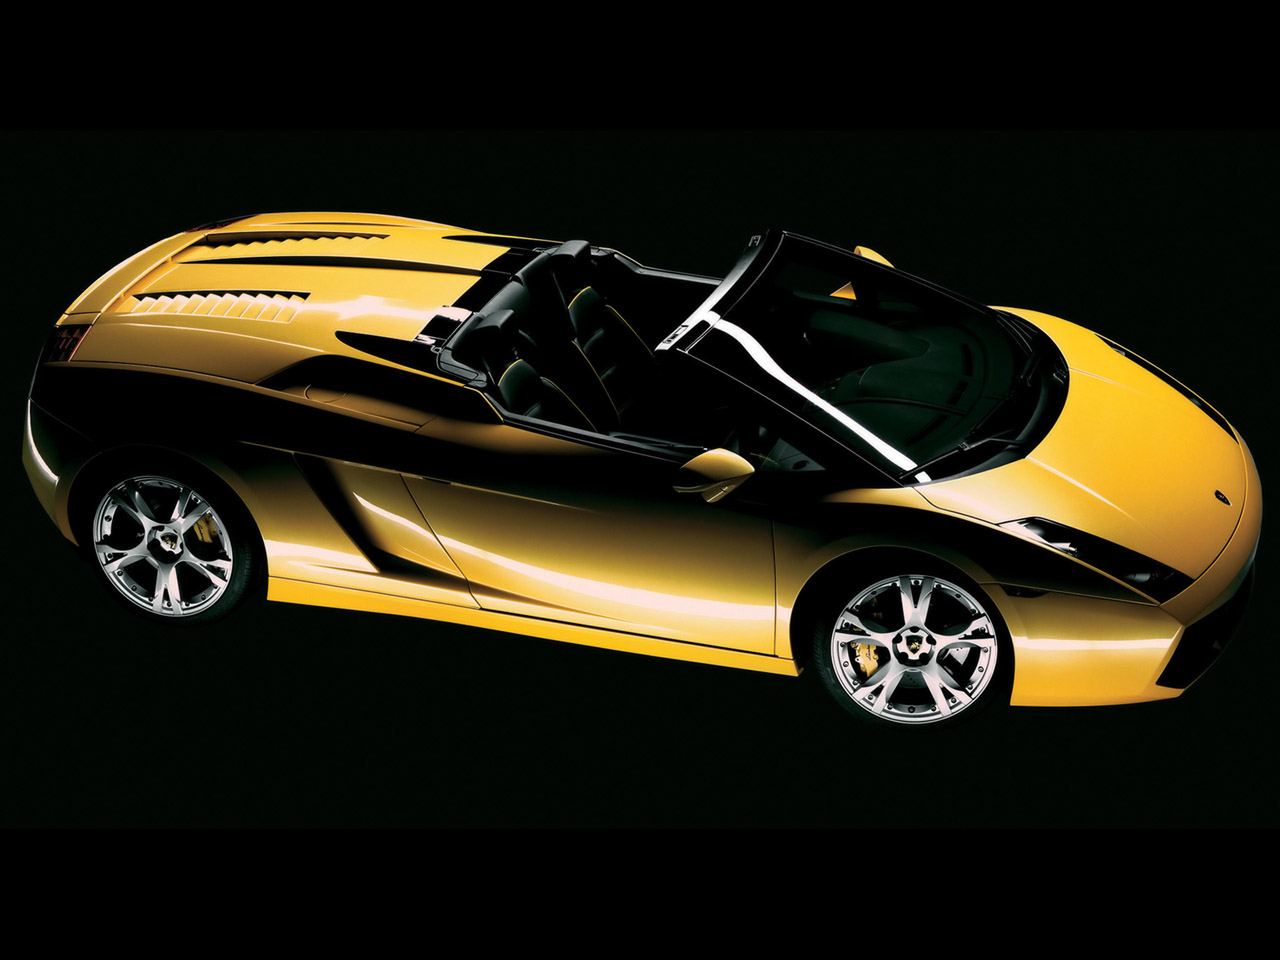 Cool Cars: Lamborghini Gallardo spyder